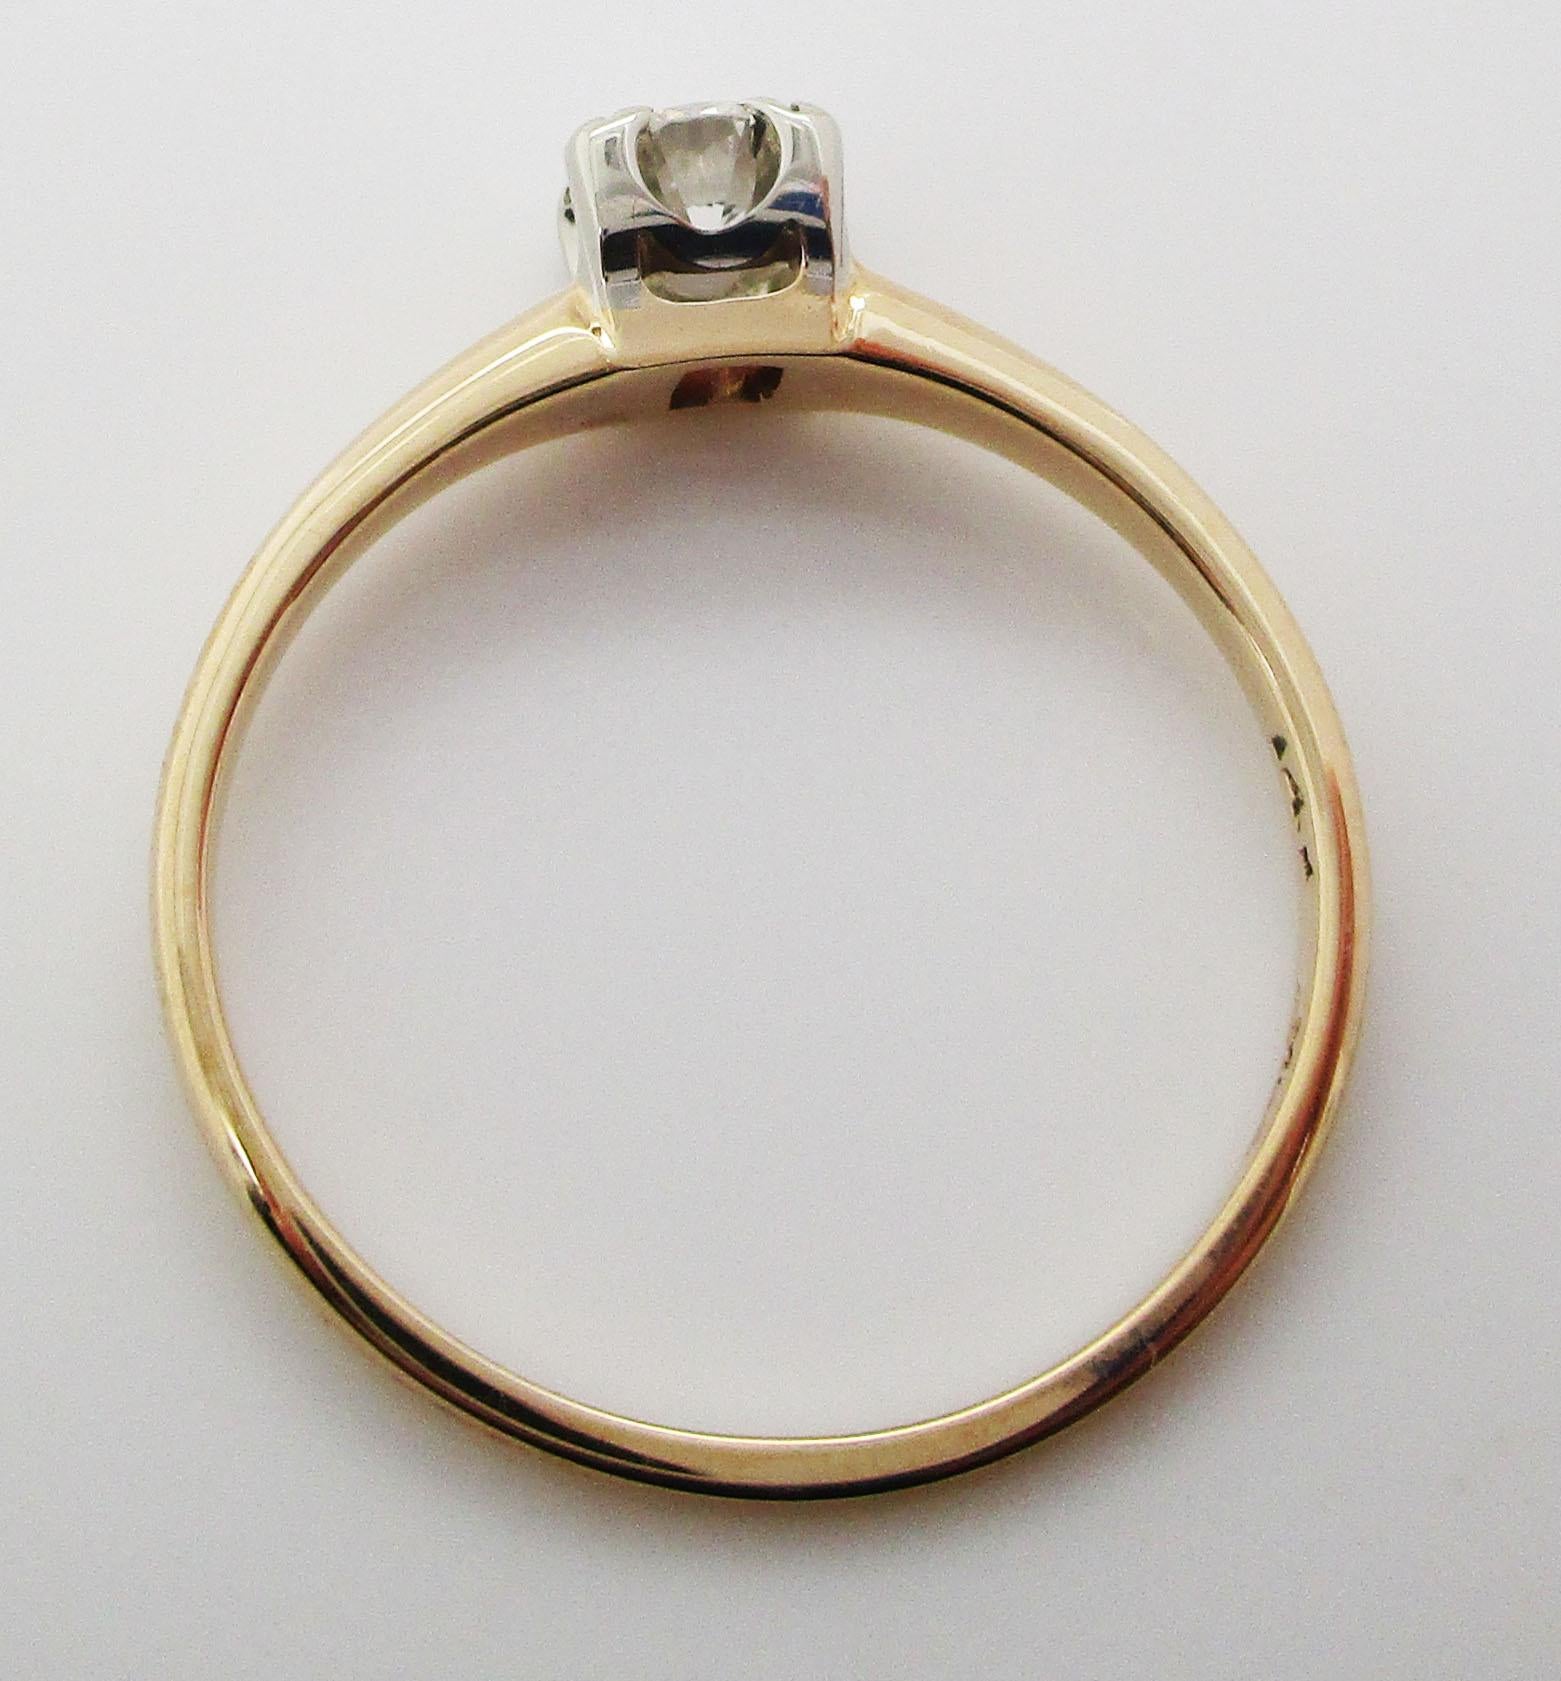 Vintage 14 Karat White and Yellow Gold Diamond Engagement Ring 4